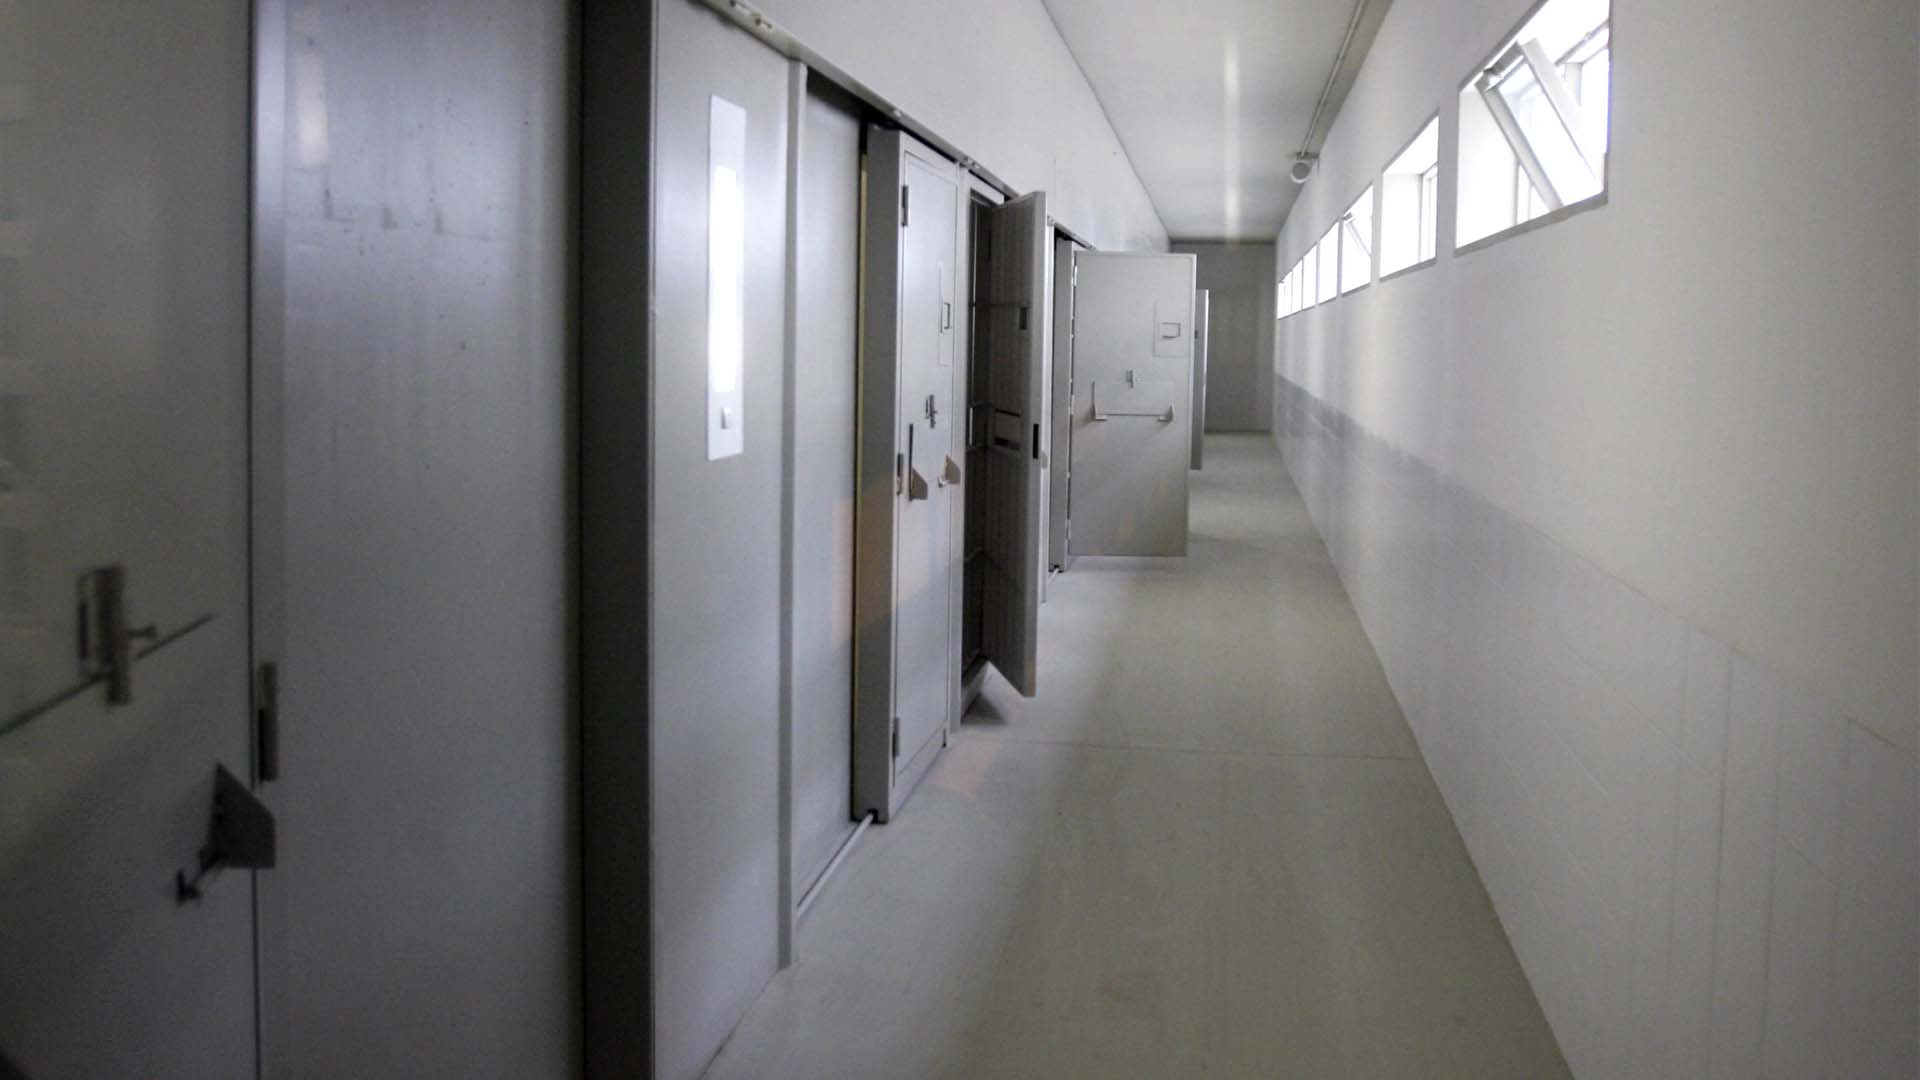 Condenado a 96 años de cárcel el ‘violador del ascensor’ por varios delitos de agresión sexual